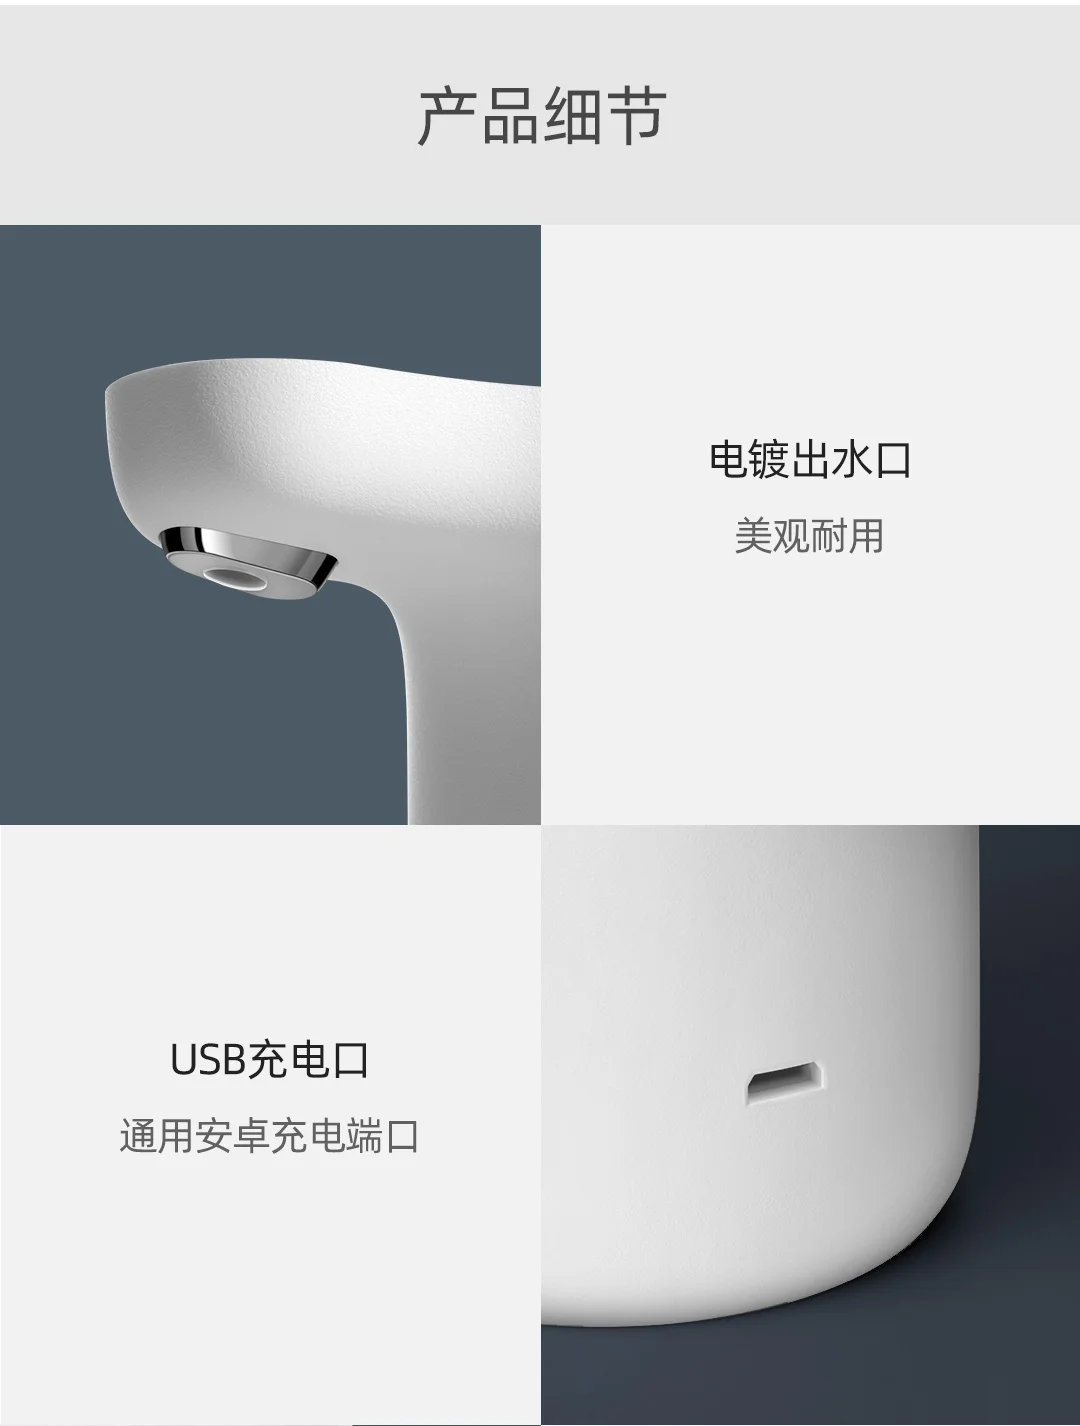 Новейший Xiaomi Mijia Youpin трехзонный Т1 бутилированный водяной насос цельная поилка для всех типов бутилированной воды белого цвета